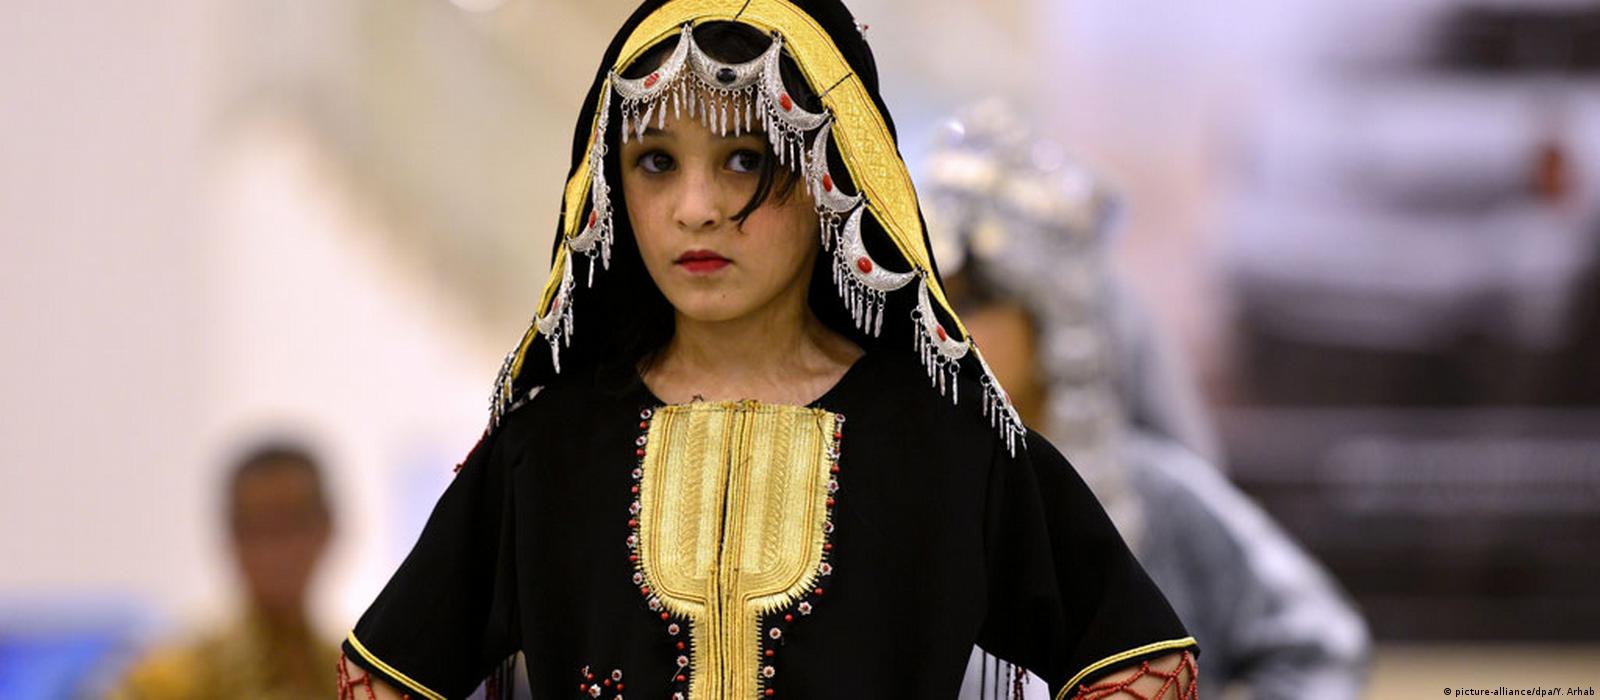  أزياء تقليدية في اليمن. Traditionelle Mode im Jemen Bild dpa